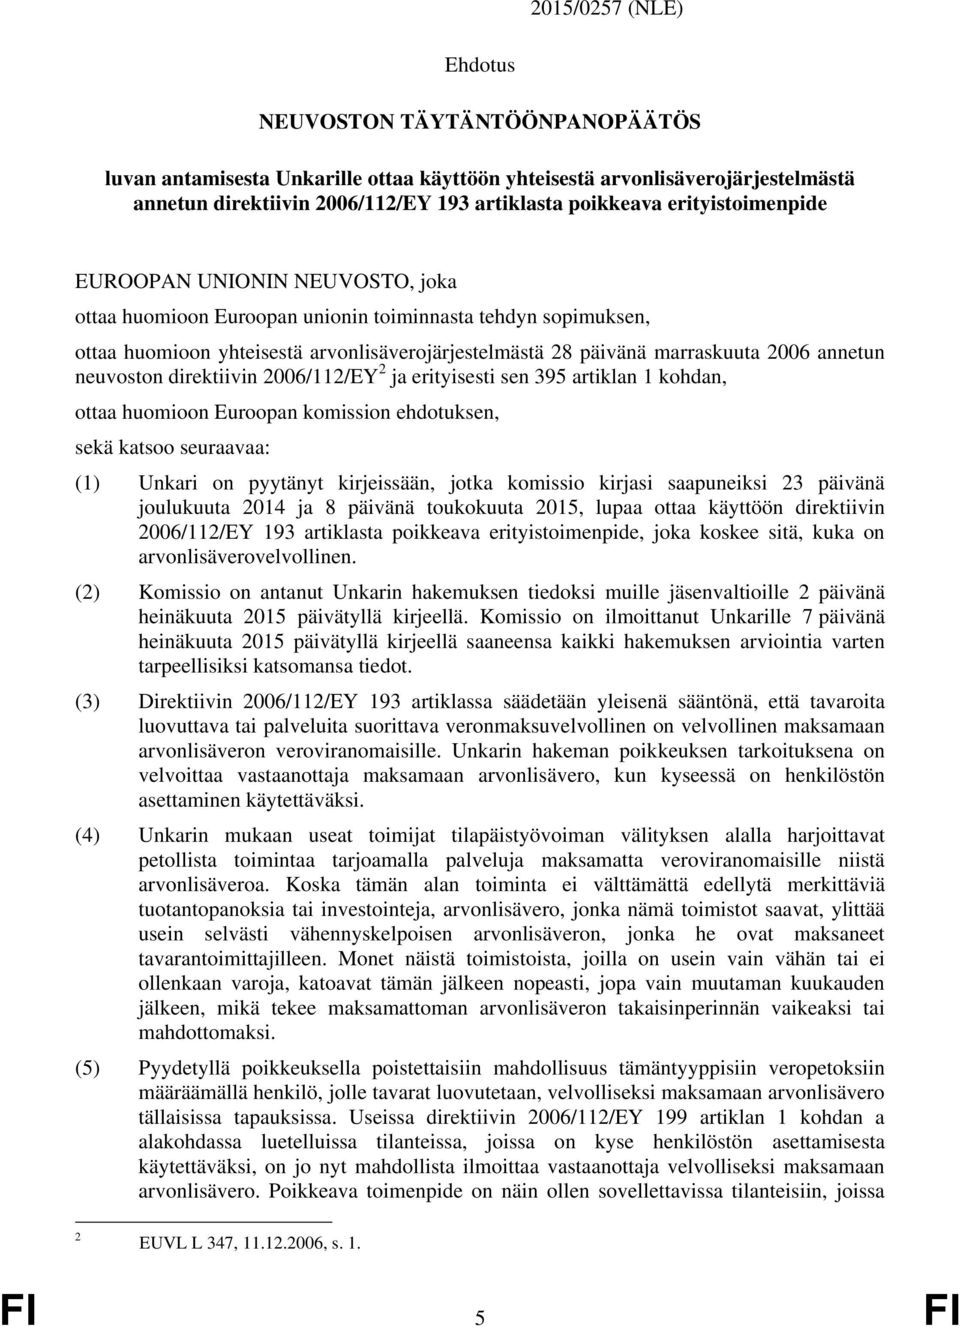 annetun neuvoston direktiivin 2006/112/EY 2 ja erityisesti sen 395 artiklan 1 kohdan, ottaa huomioon Euroopan komission ehdotuksen, sekä katsoo seuraavaa: (1) Unkari on pyytänyt kirjeissään, jotka